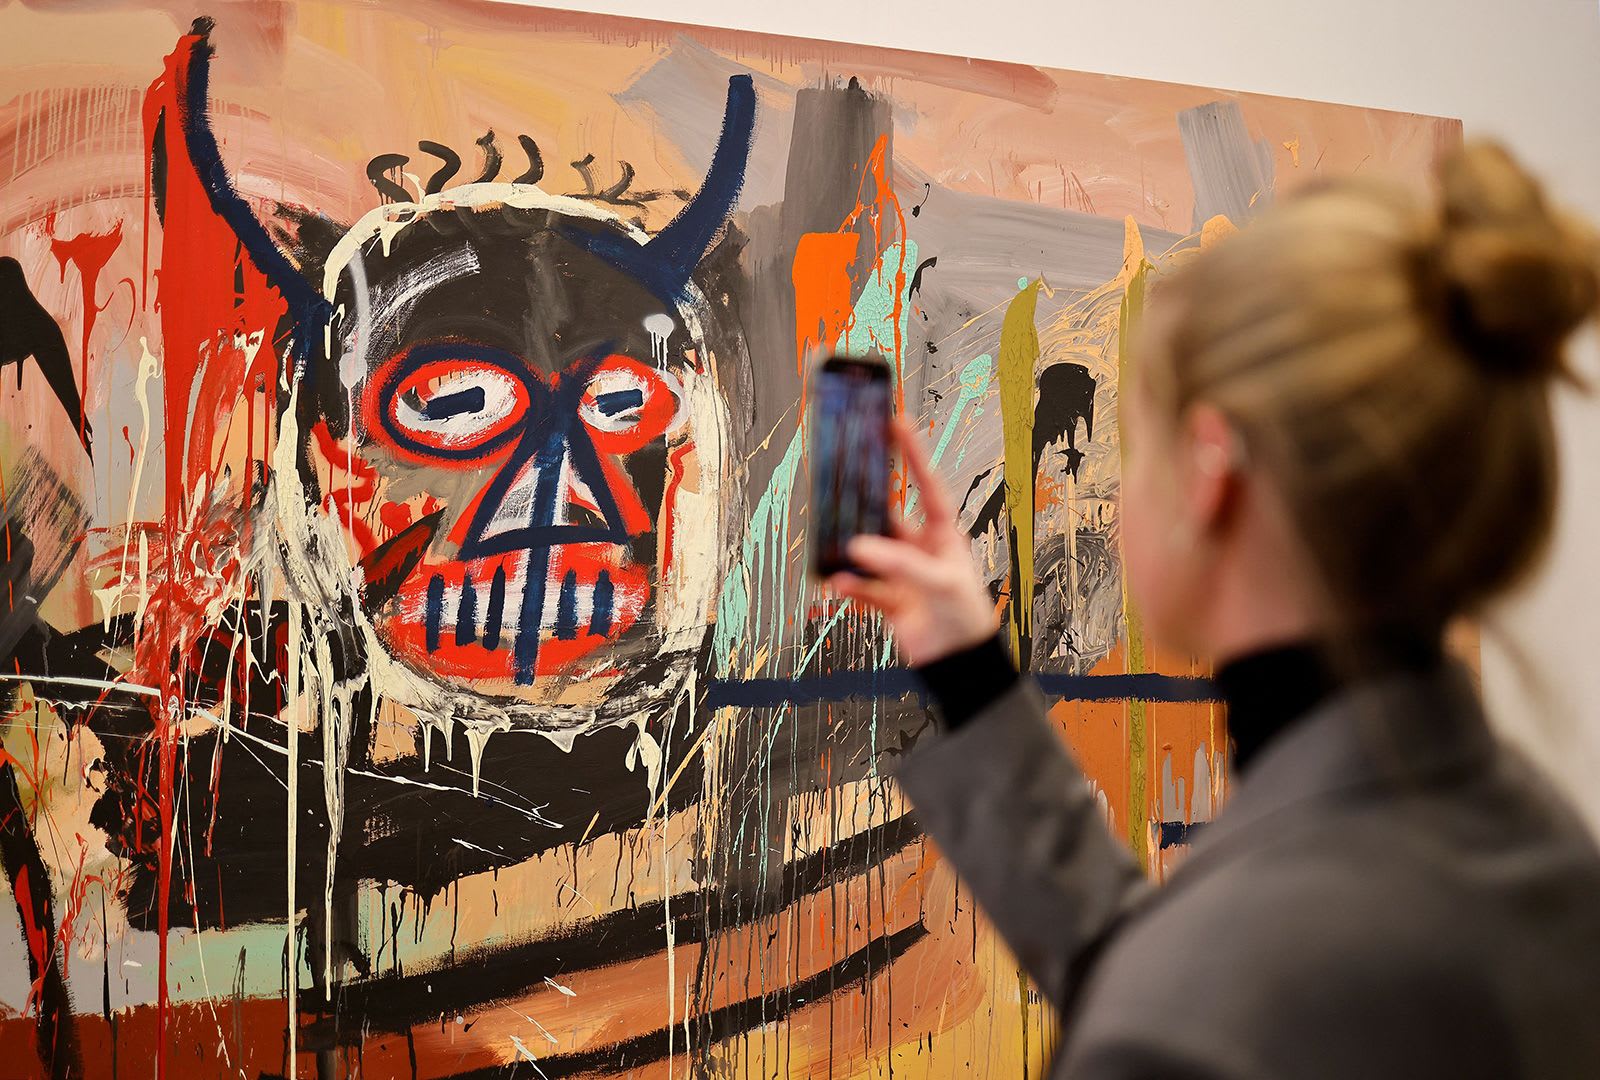 لوحات فنية نادرة تجتمع لأول مرة بعد 41 عاما من إلغاء معرض مخصص لها 